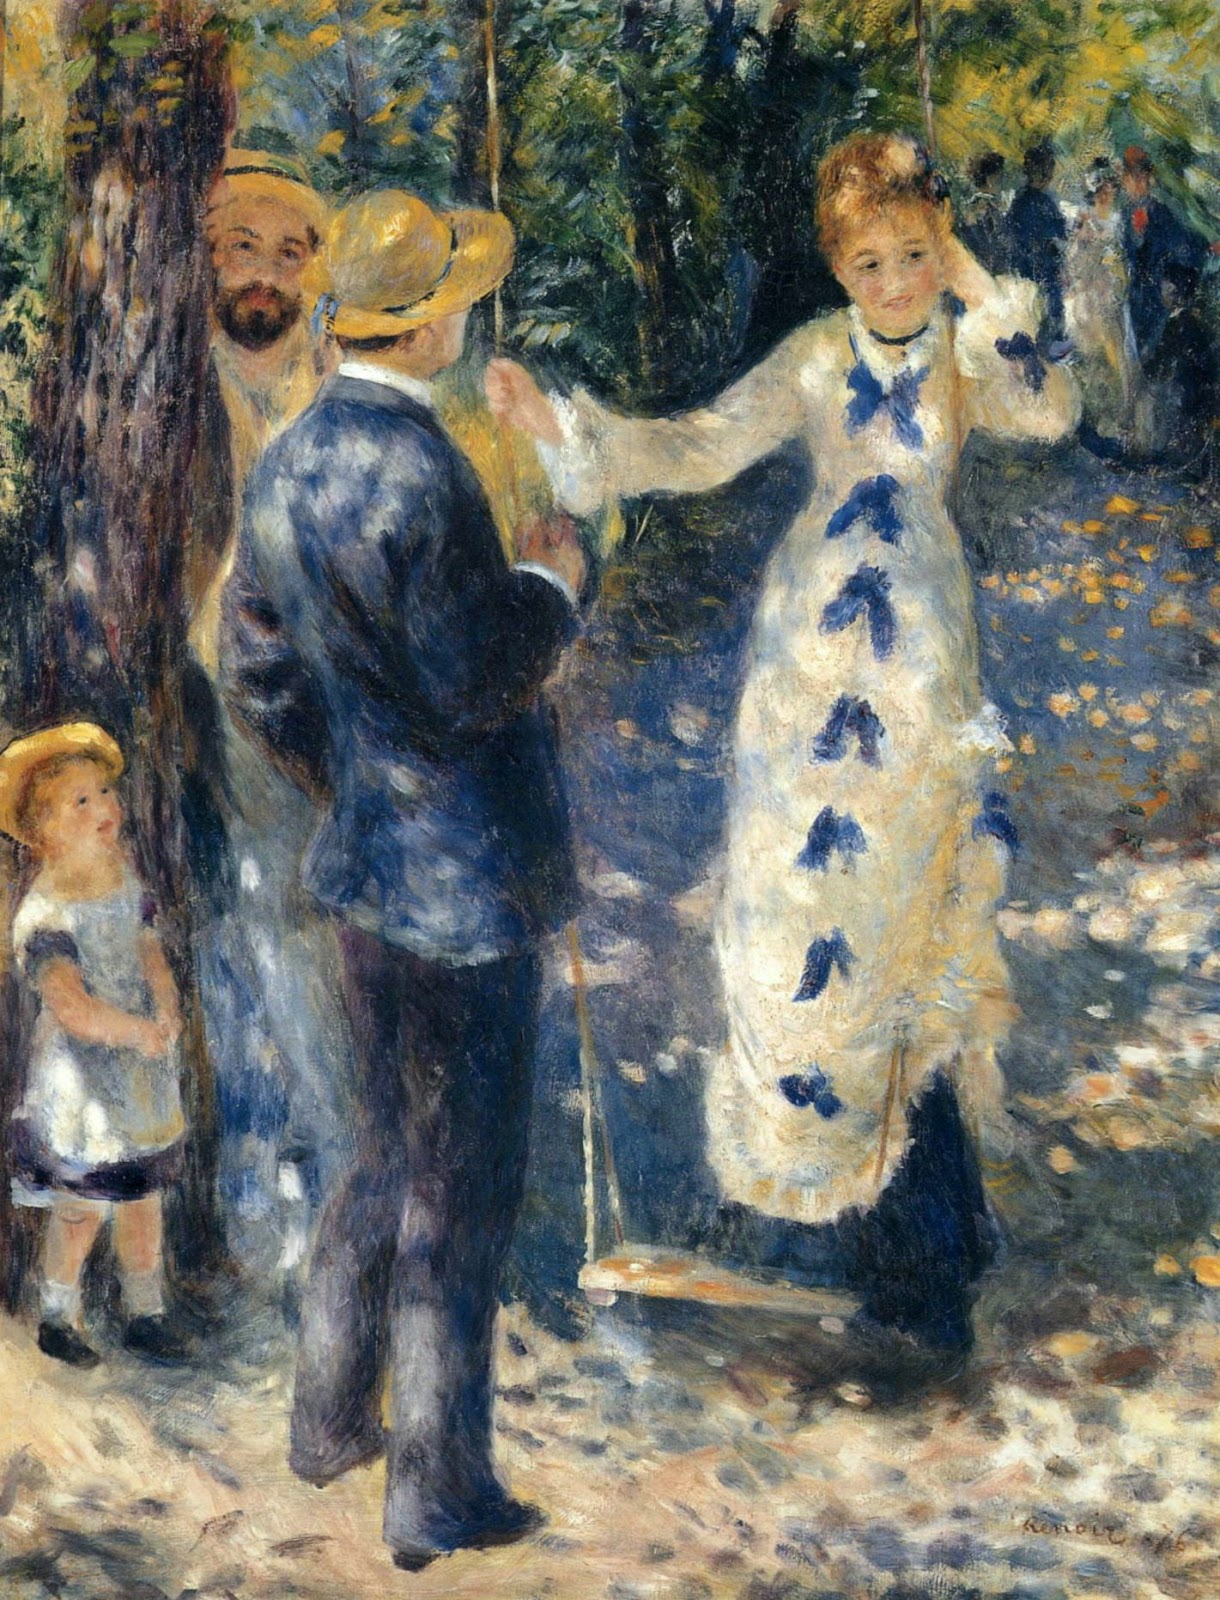 Pierre+Auguste+Renoir-1841-1-19 (943).jpg